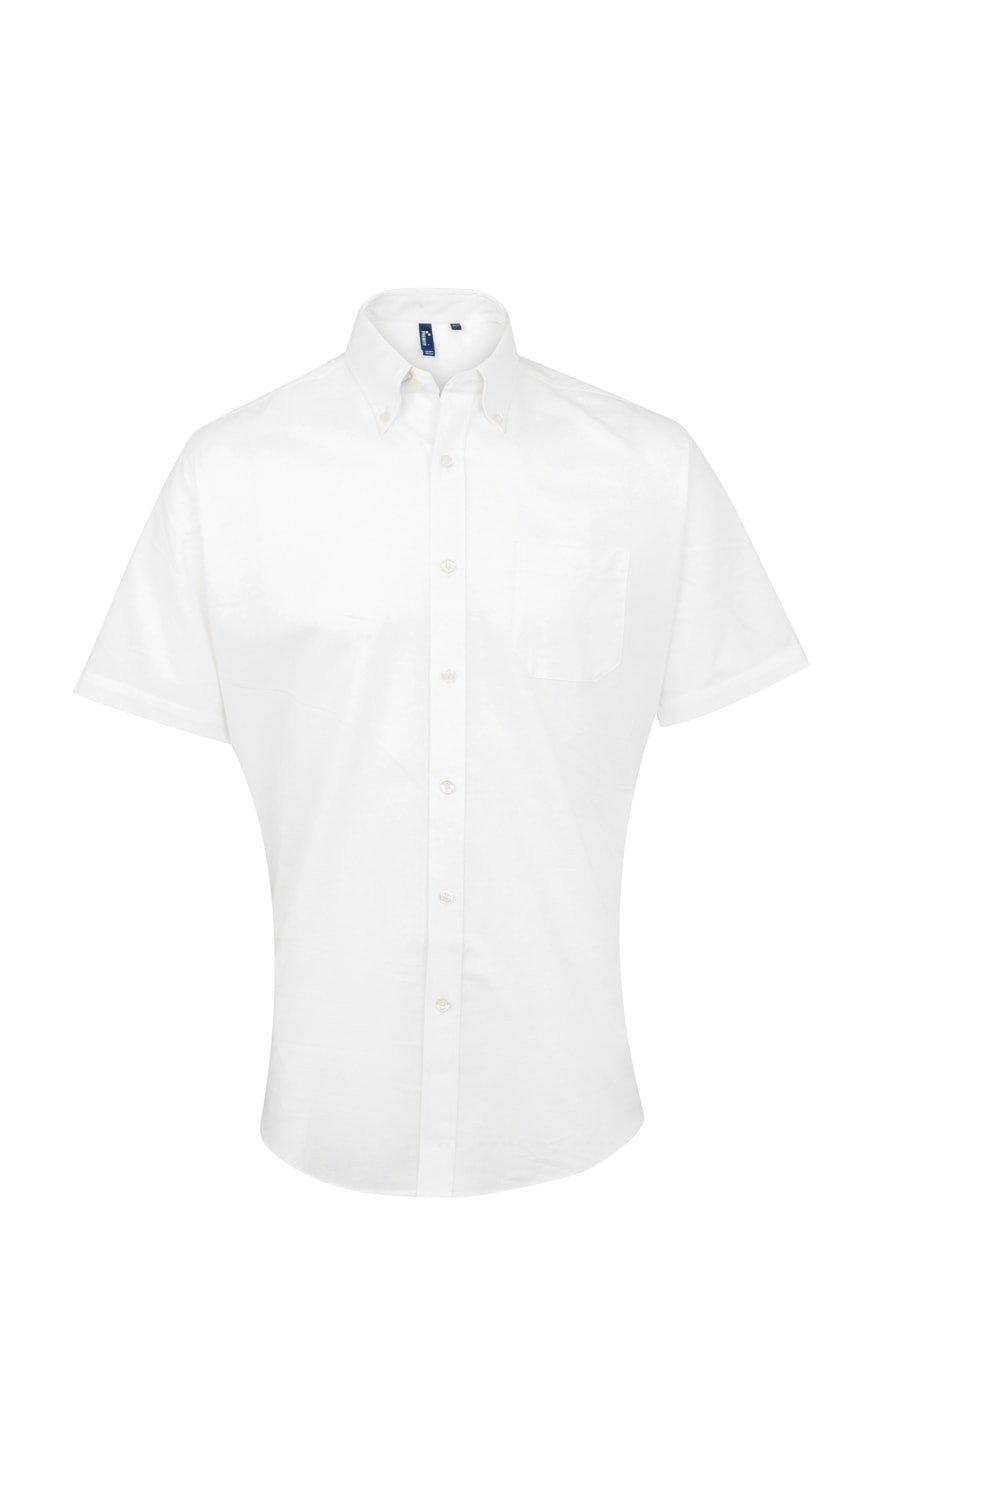 цена Оксфордская рабочая рубашка с короткими рукавами Signature Premier, белый